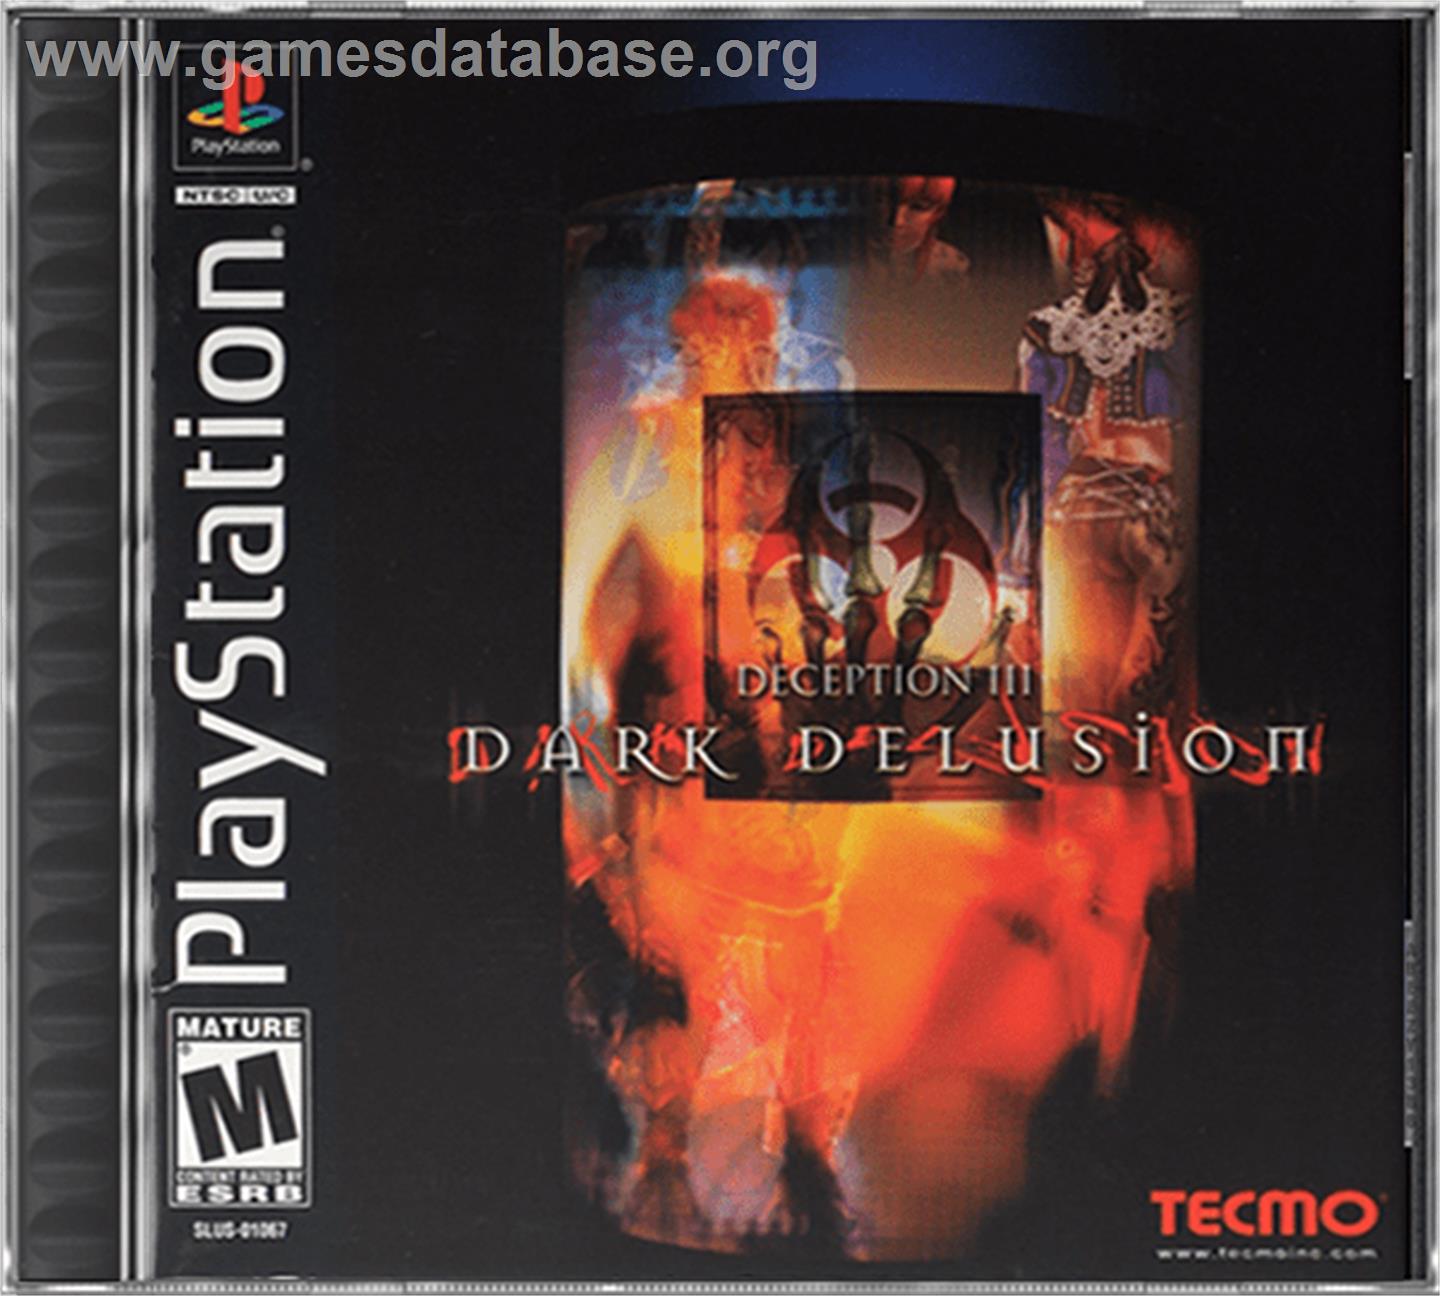 Deception III: Dark Delusion - Sony Playstation - Artwork - Box